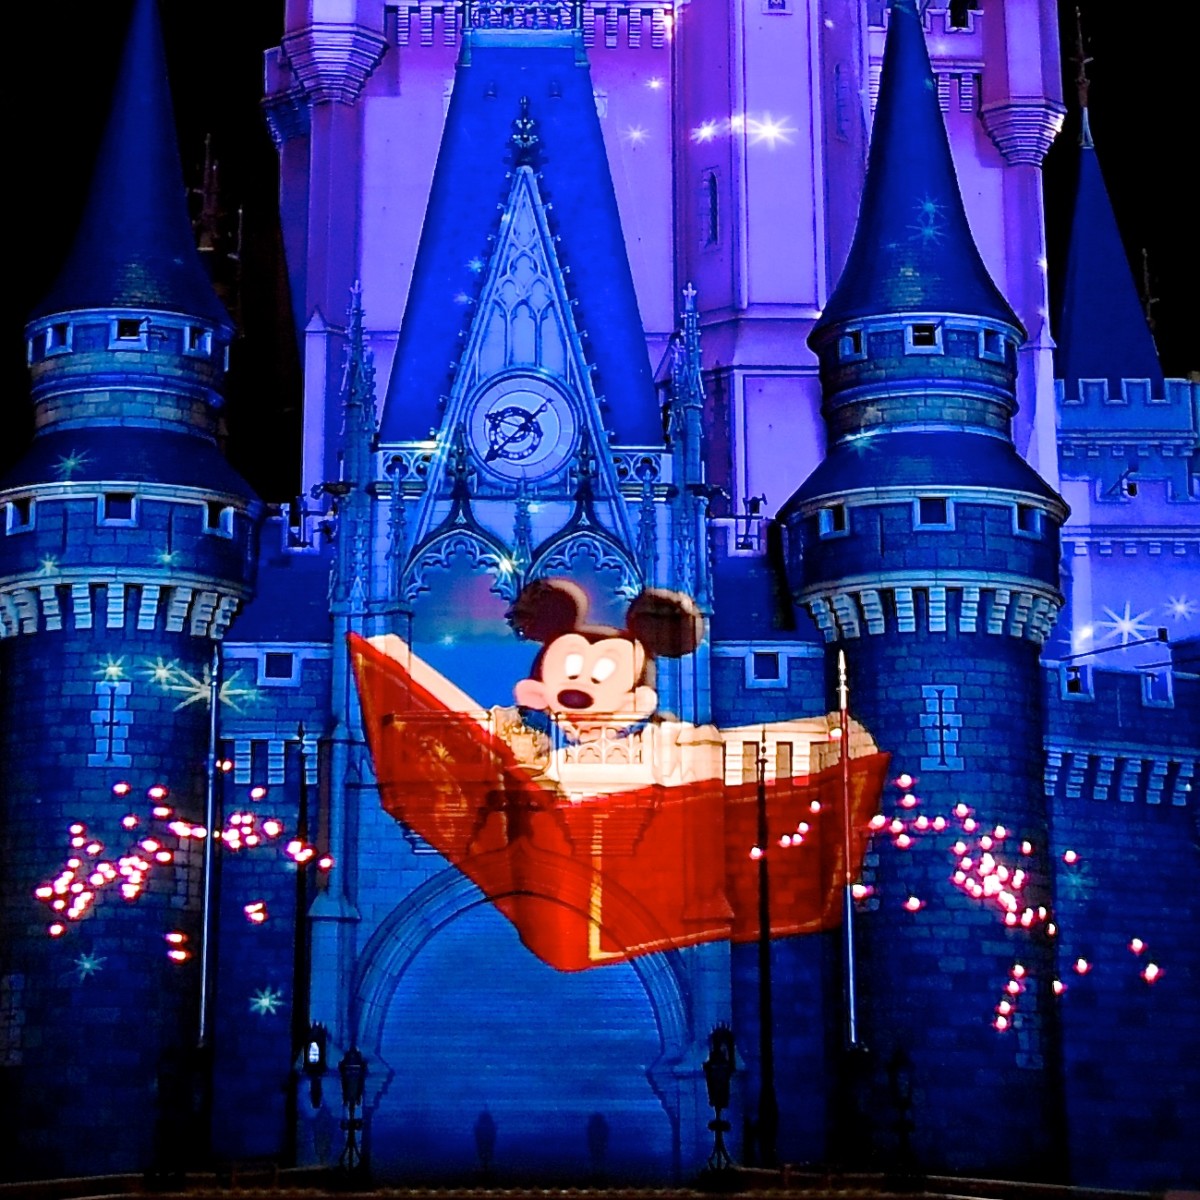 ミッキーと一緒に東京ディズニーランドの旅を ナイトタイムスペクタキュラー Celebrate Tokyo Disneyland